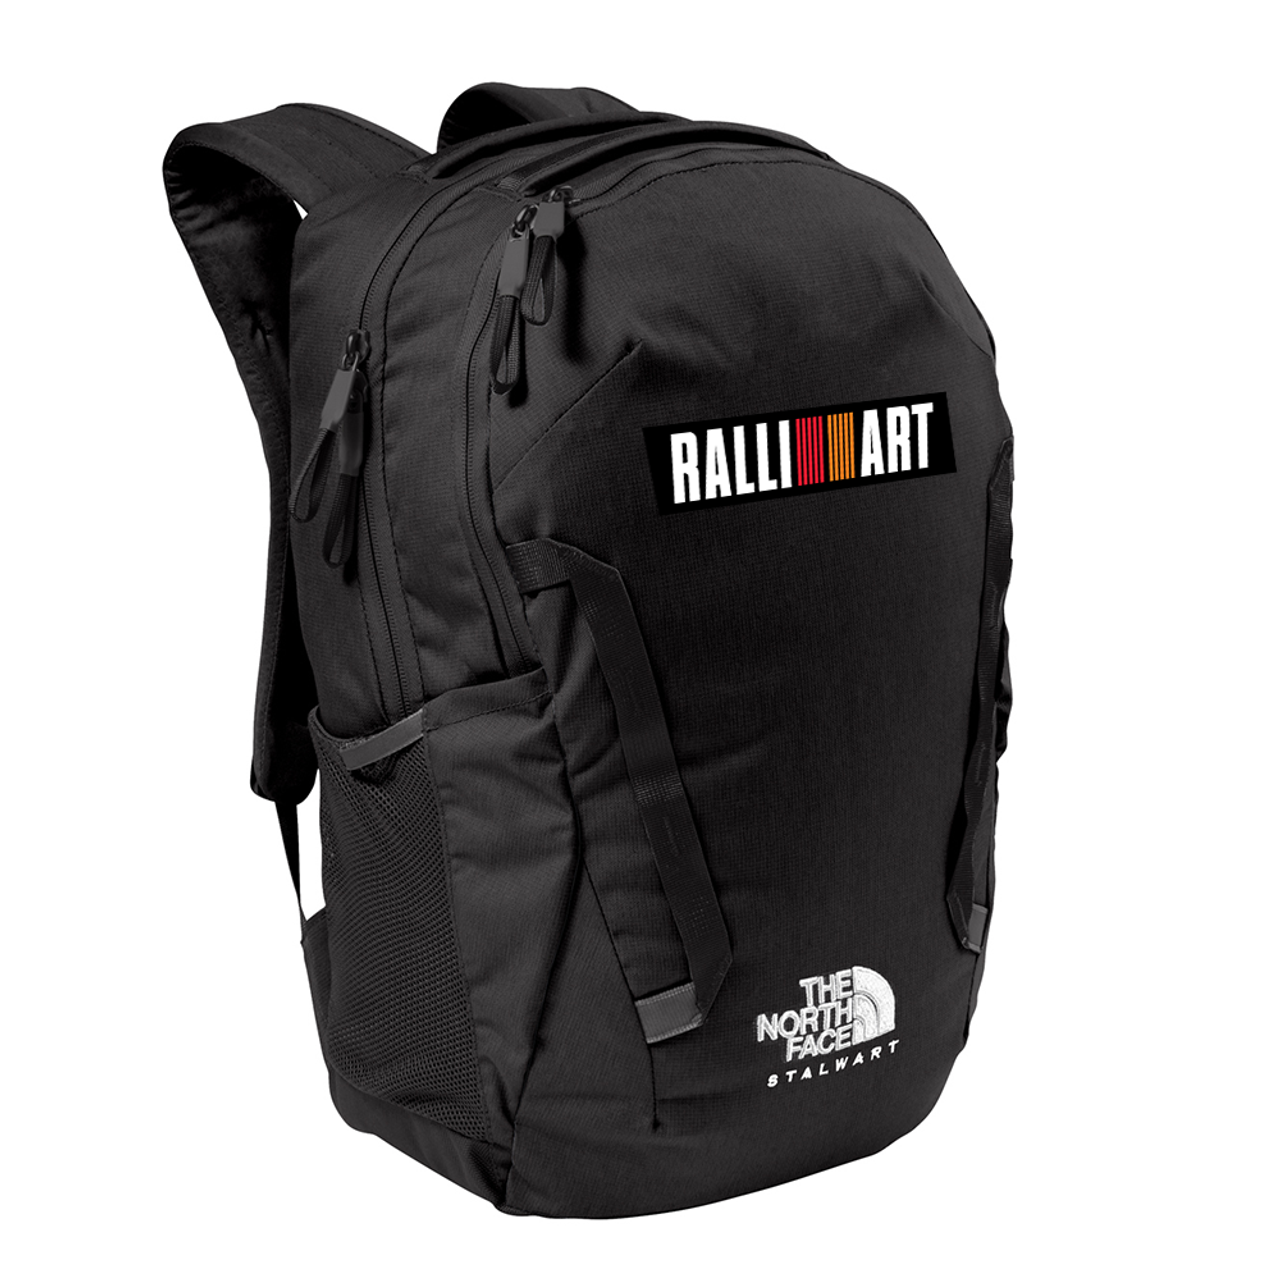 RALLIART Backpack